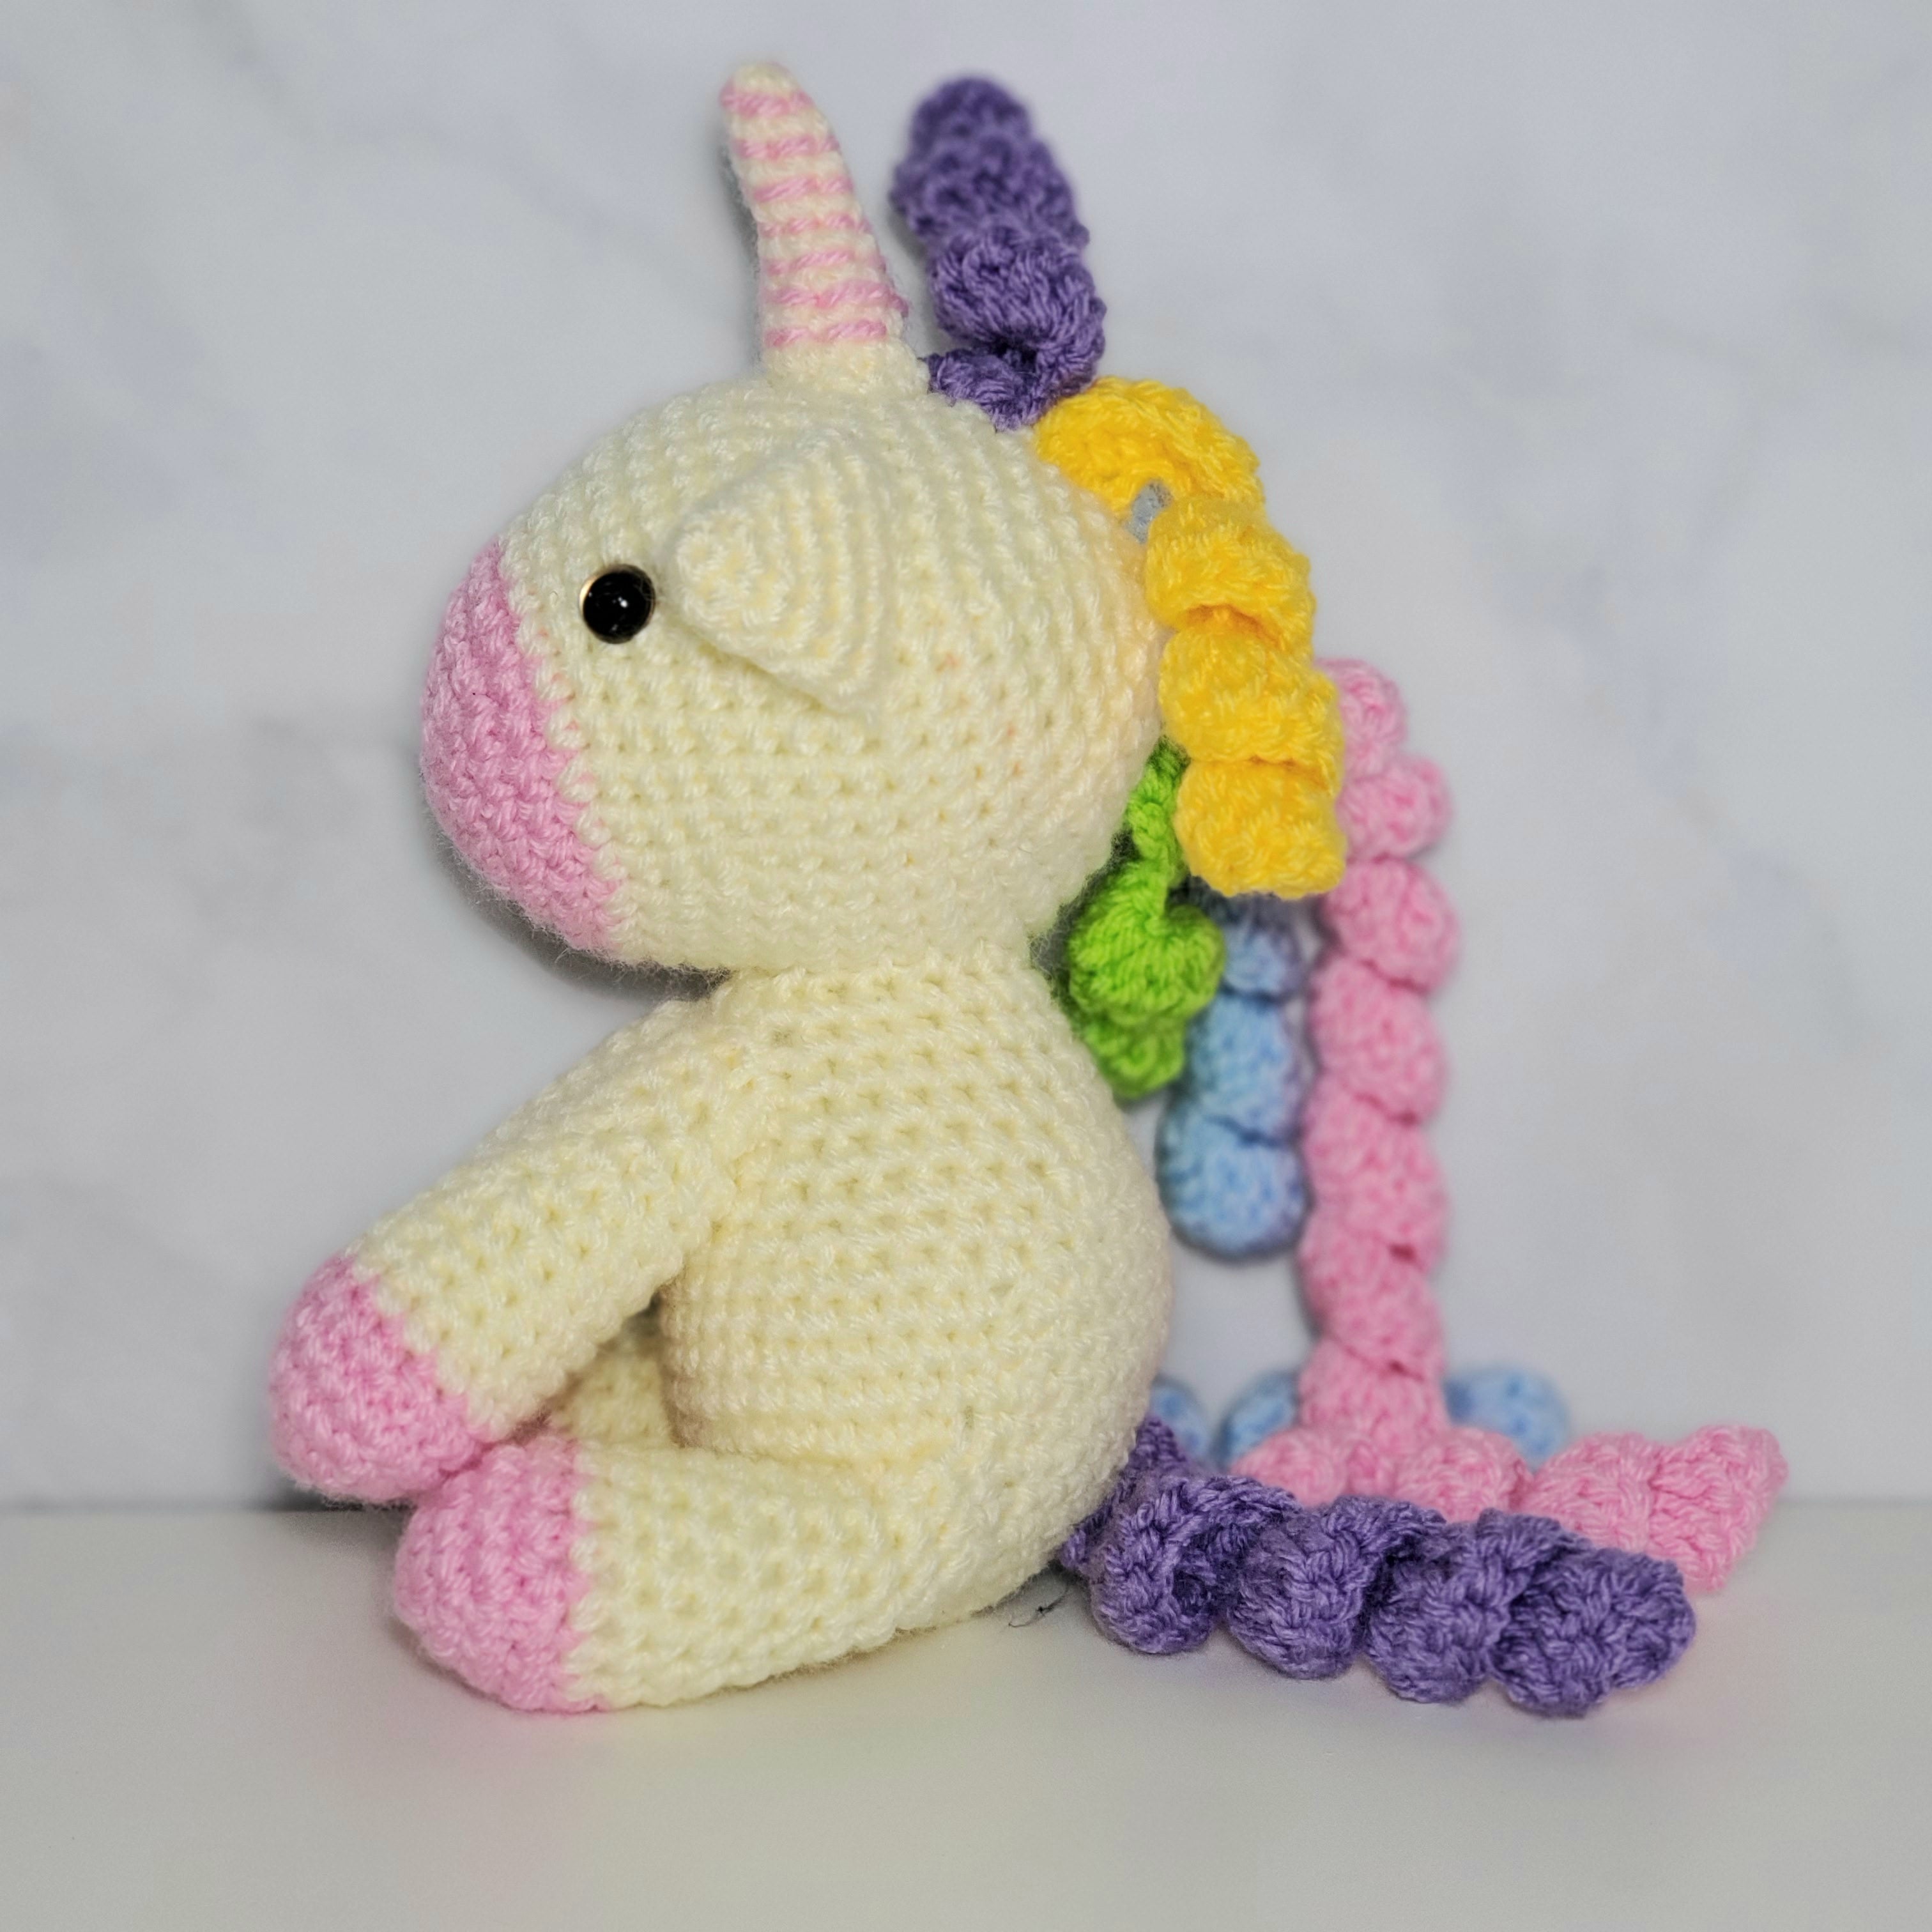 Unicorn Plush Toy - Sitting - 8 Inches